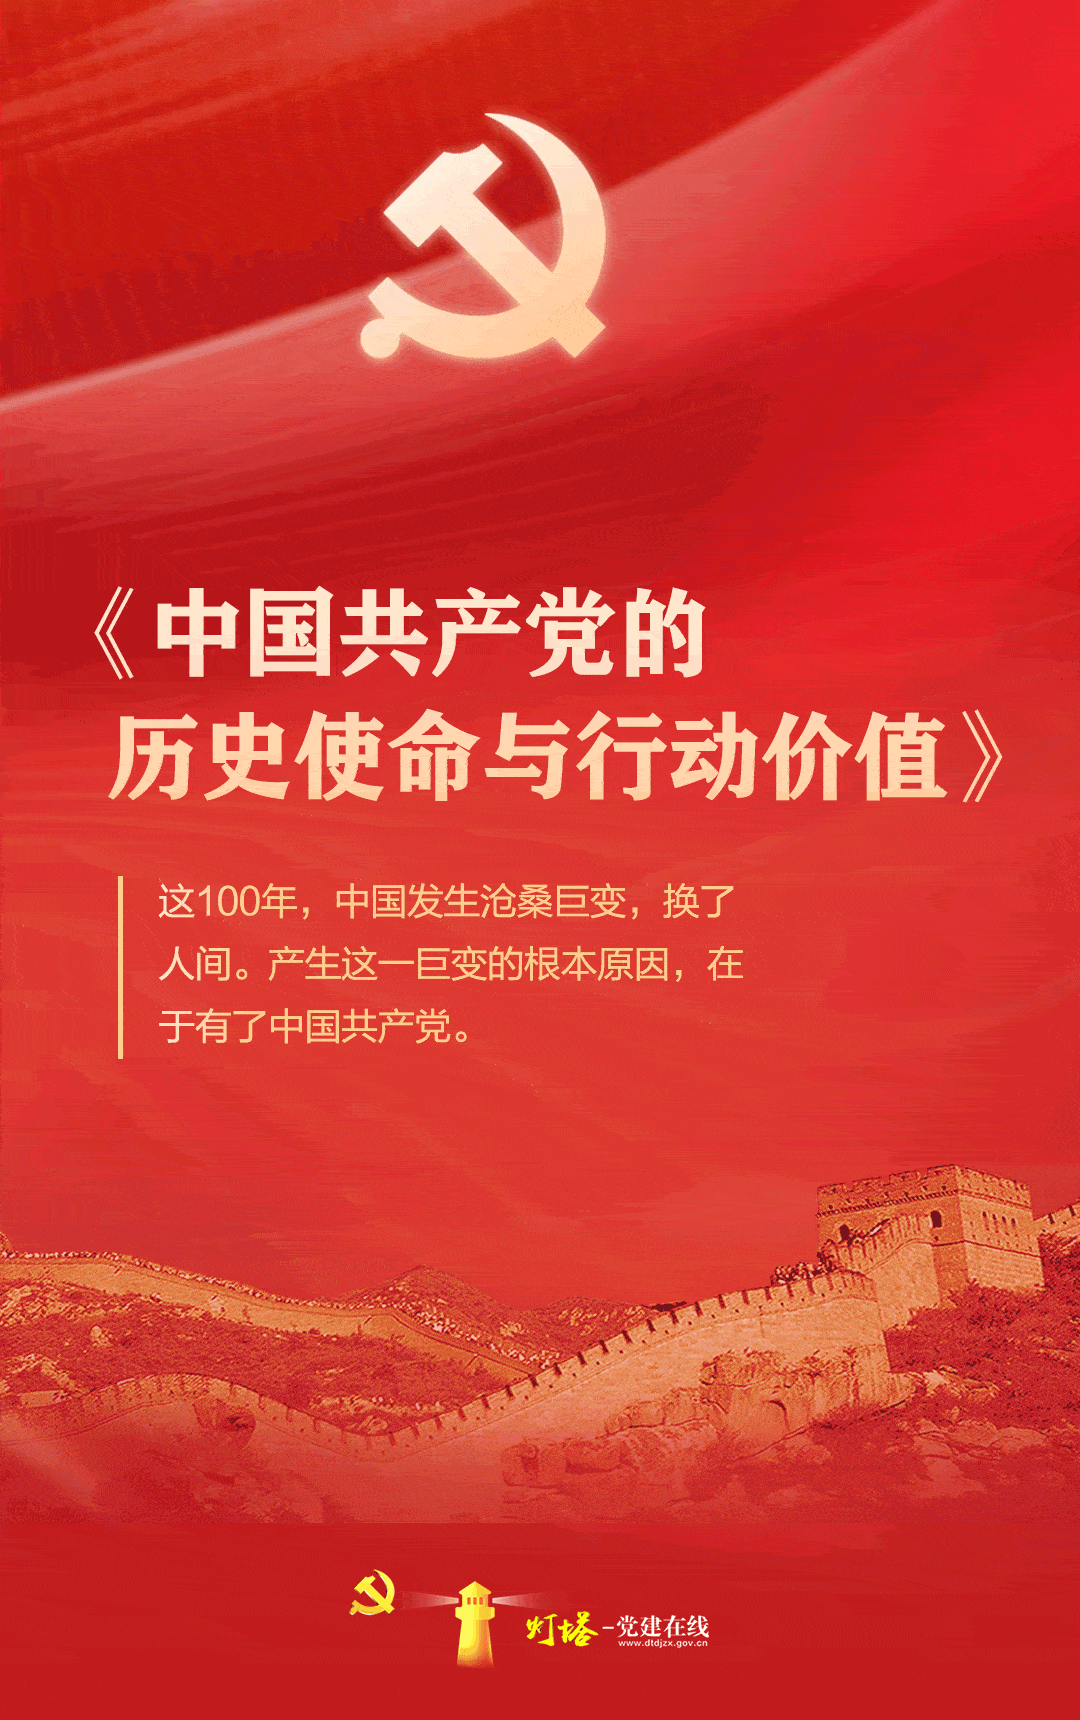 《中国共产党的历史使命与行动价值》文献发布